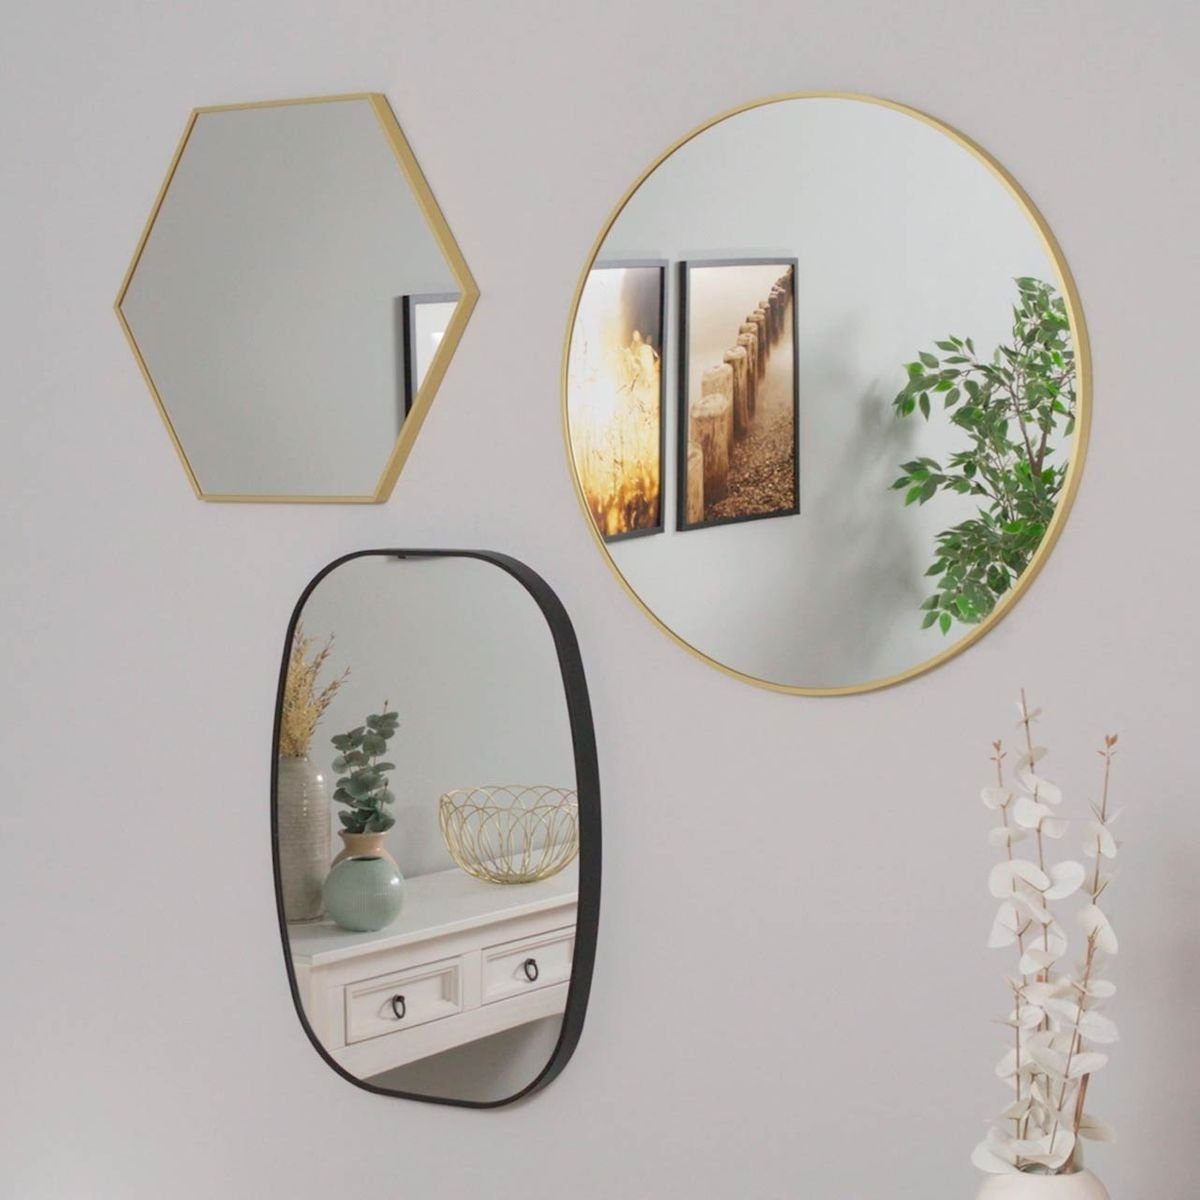 PHOTOLINI Spiegel mit Metallrahmen, Wandspiegel halbrund, cm Rahmen 50x75 schmaler Schwarz